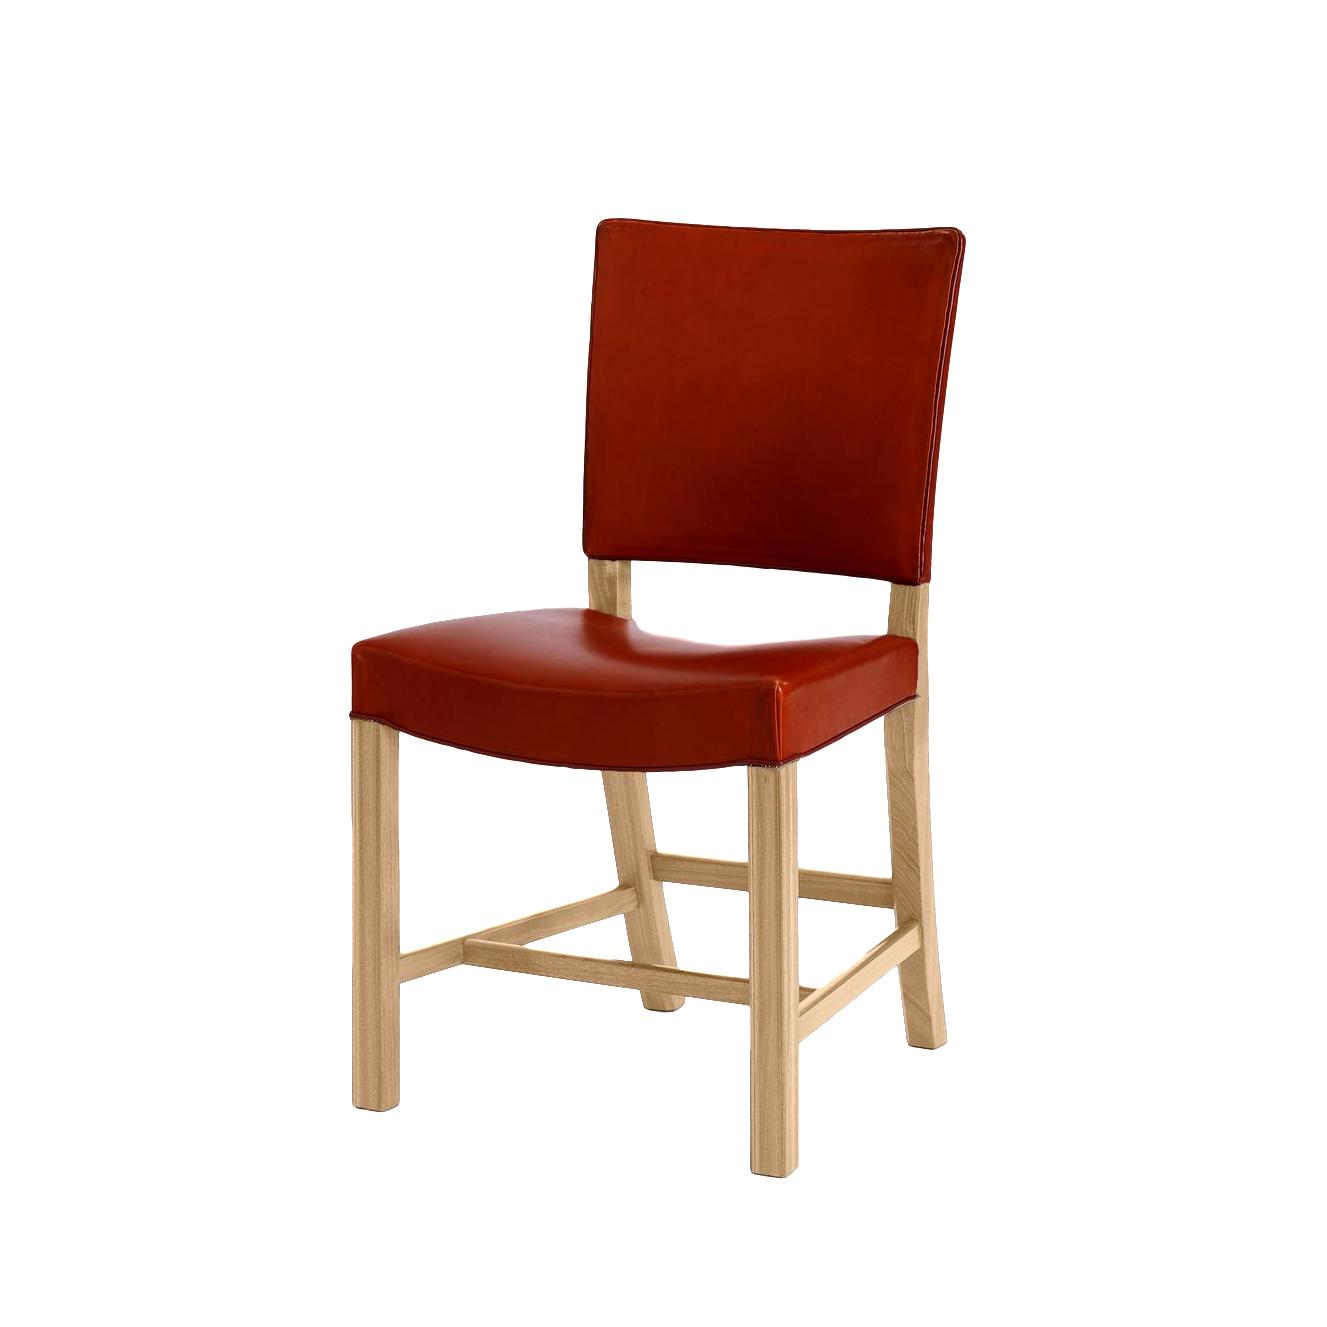 Carl Hansen KK39490 Małe czerwone krzesło, dębowe/czarna skóra